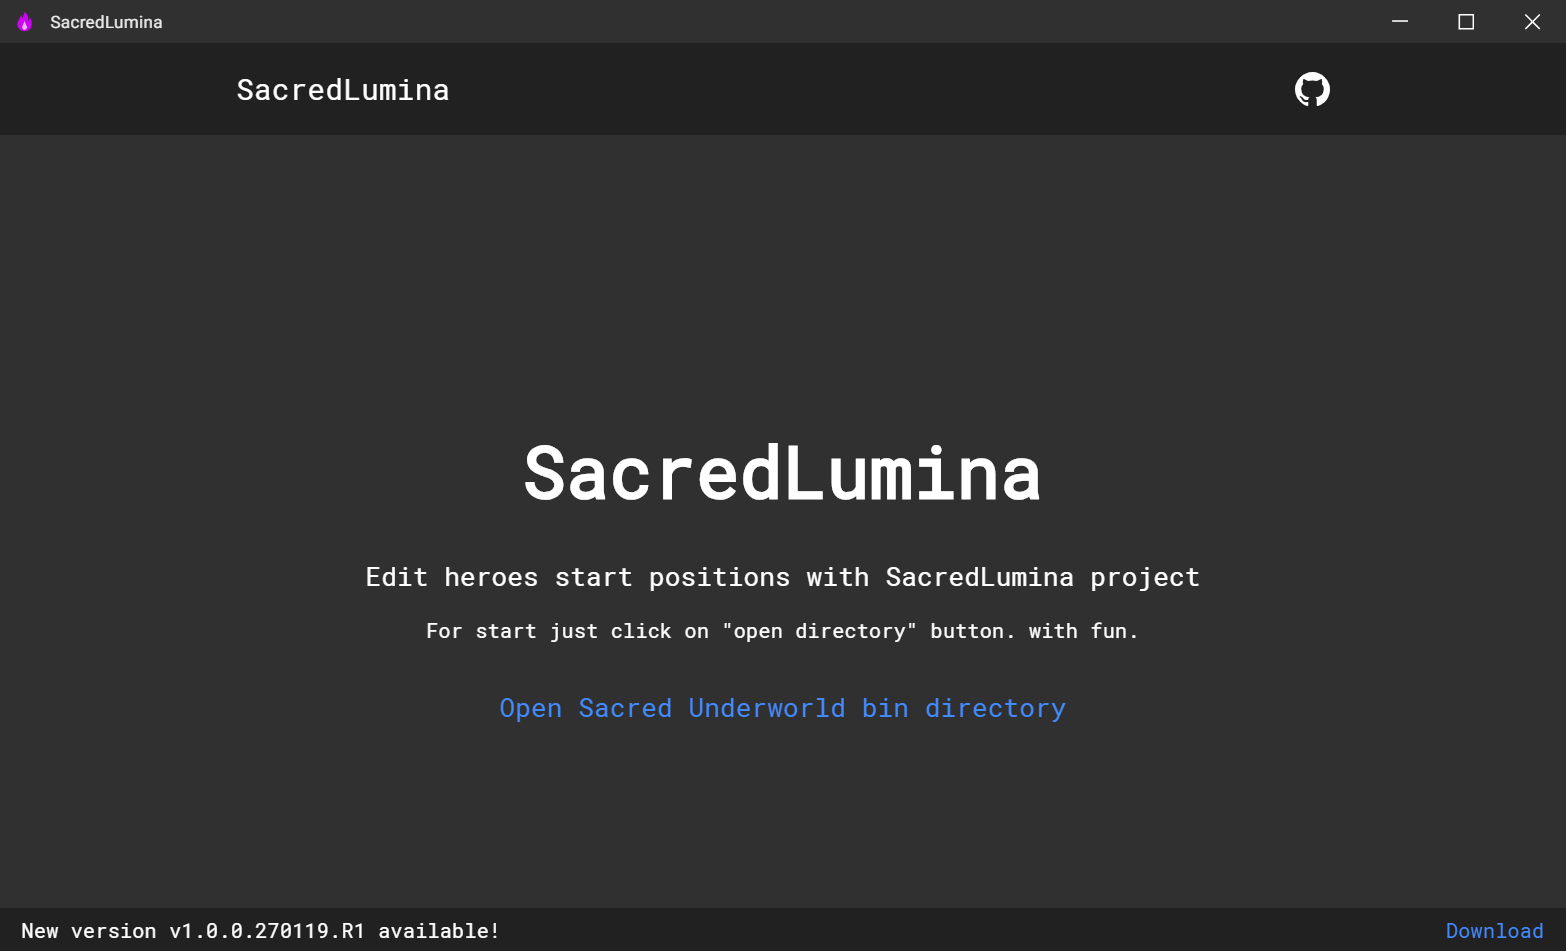 SacredLumina base page